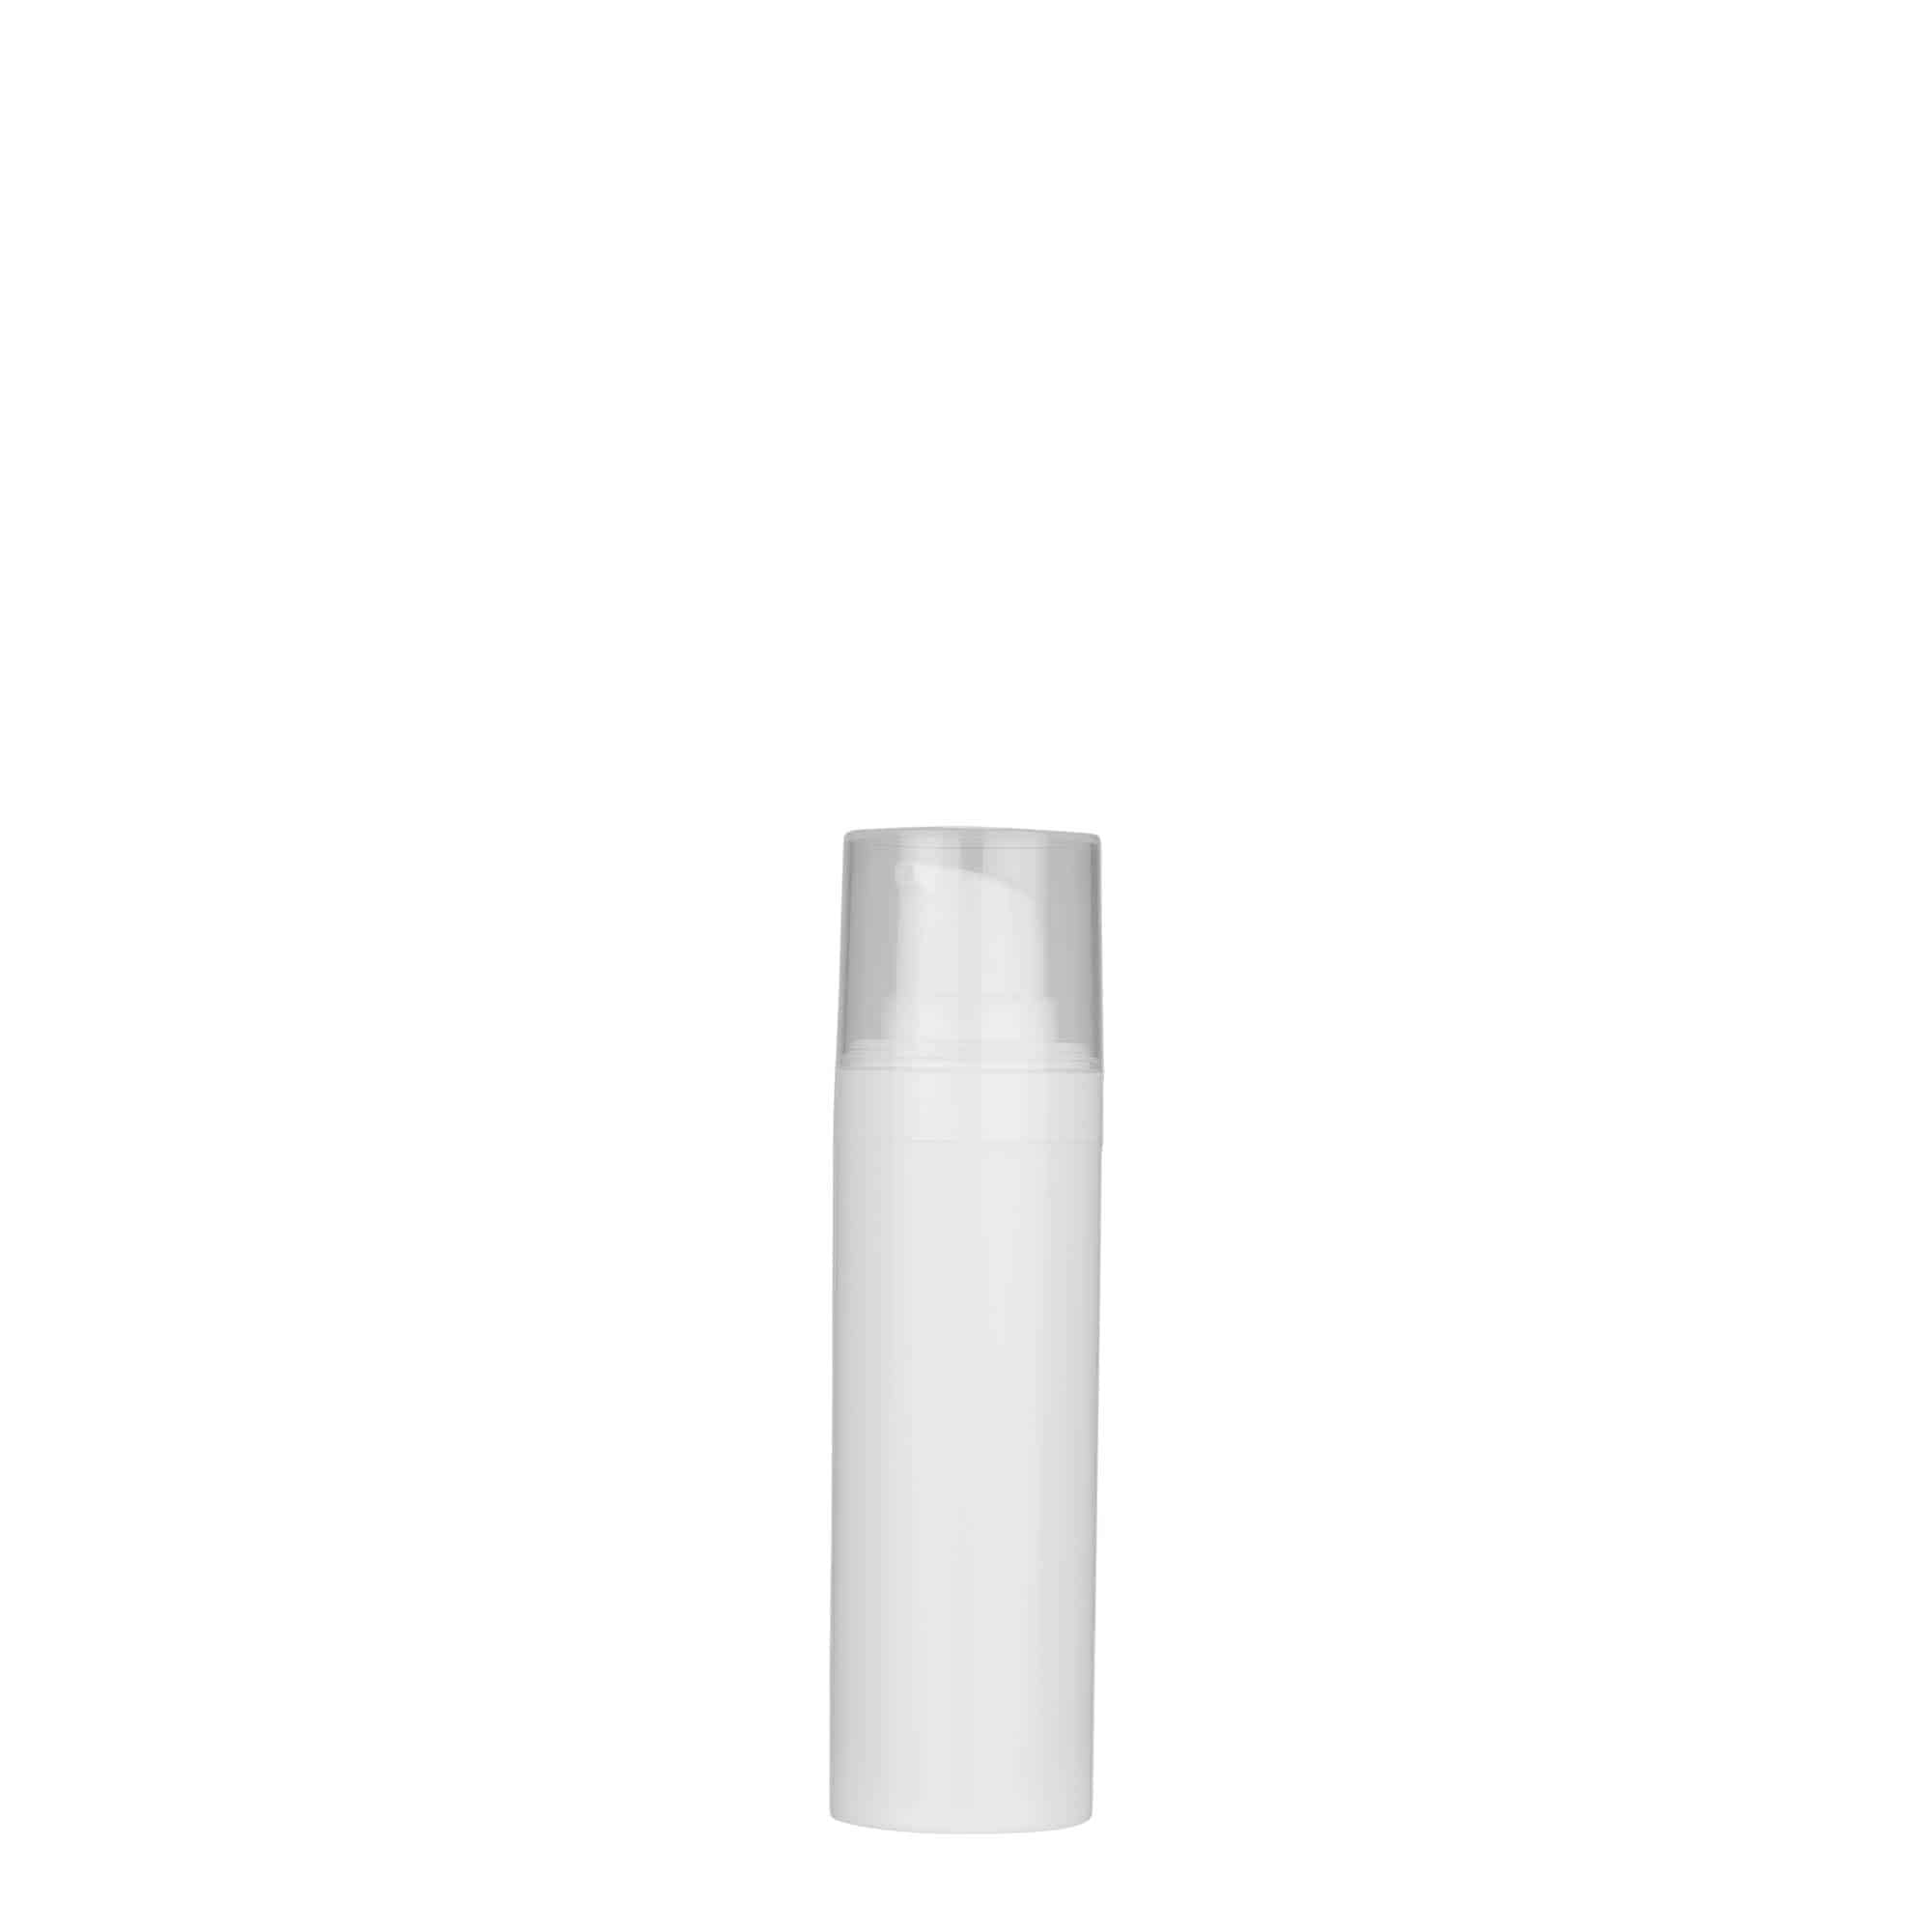 30 ml dozownik airless 'Micro', tworzywo sztuczne PP, kolor biały